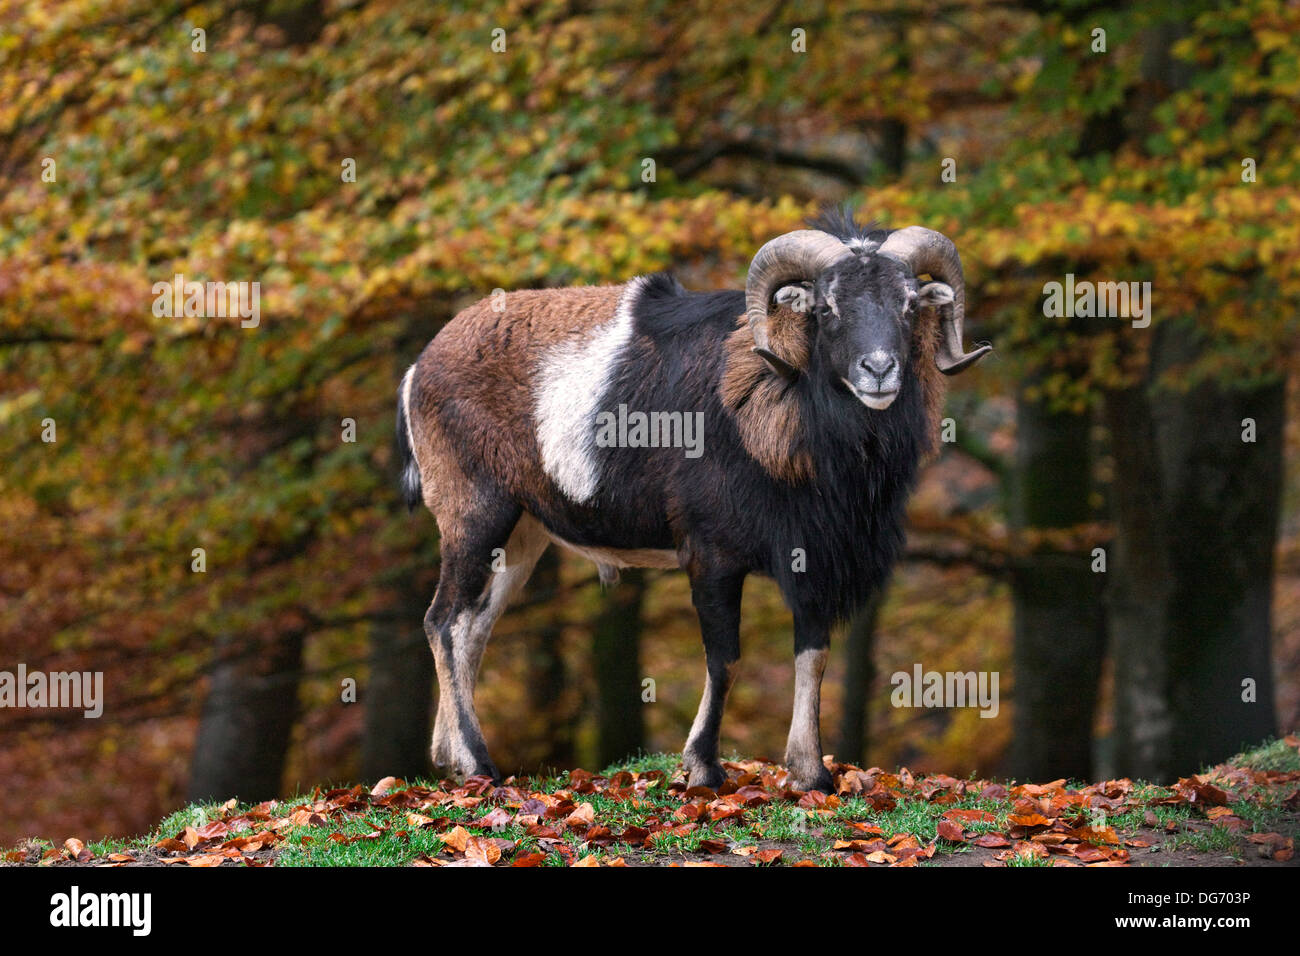 European mouflon (Ovis gmelini musimon / Ovis ammon / Ovis orientalis musimon) ram in forest in autumn Stock Photo